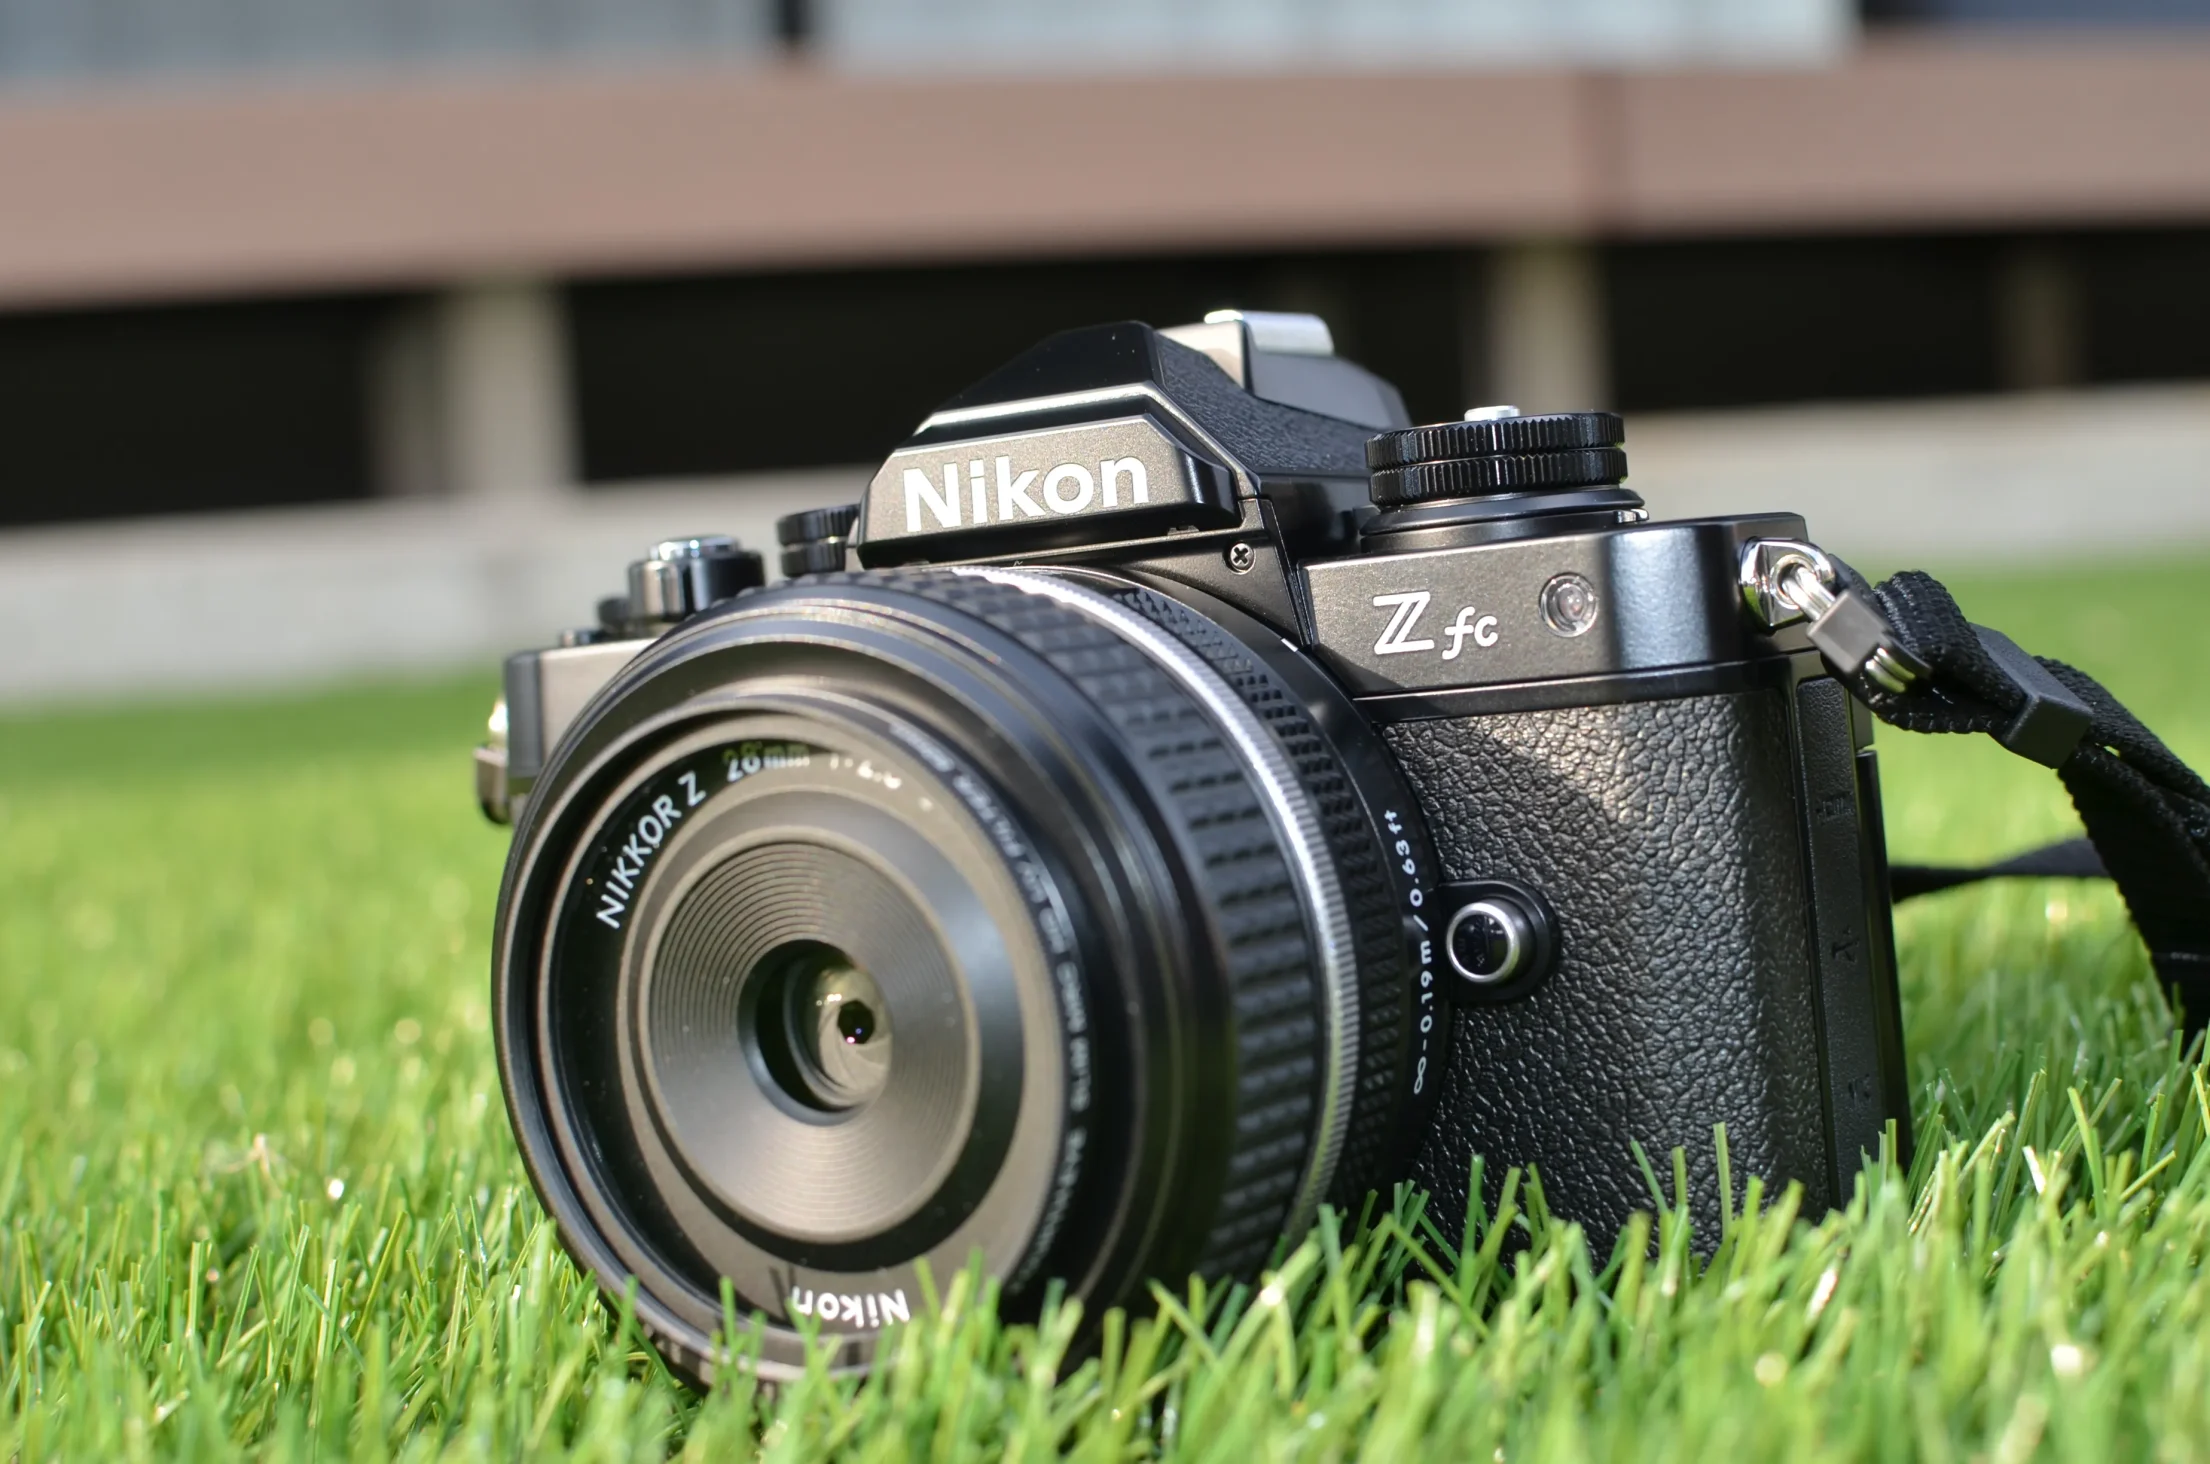 Nikon Z fcを芝に置いている写真